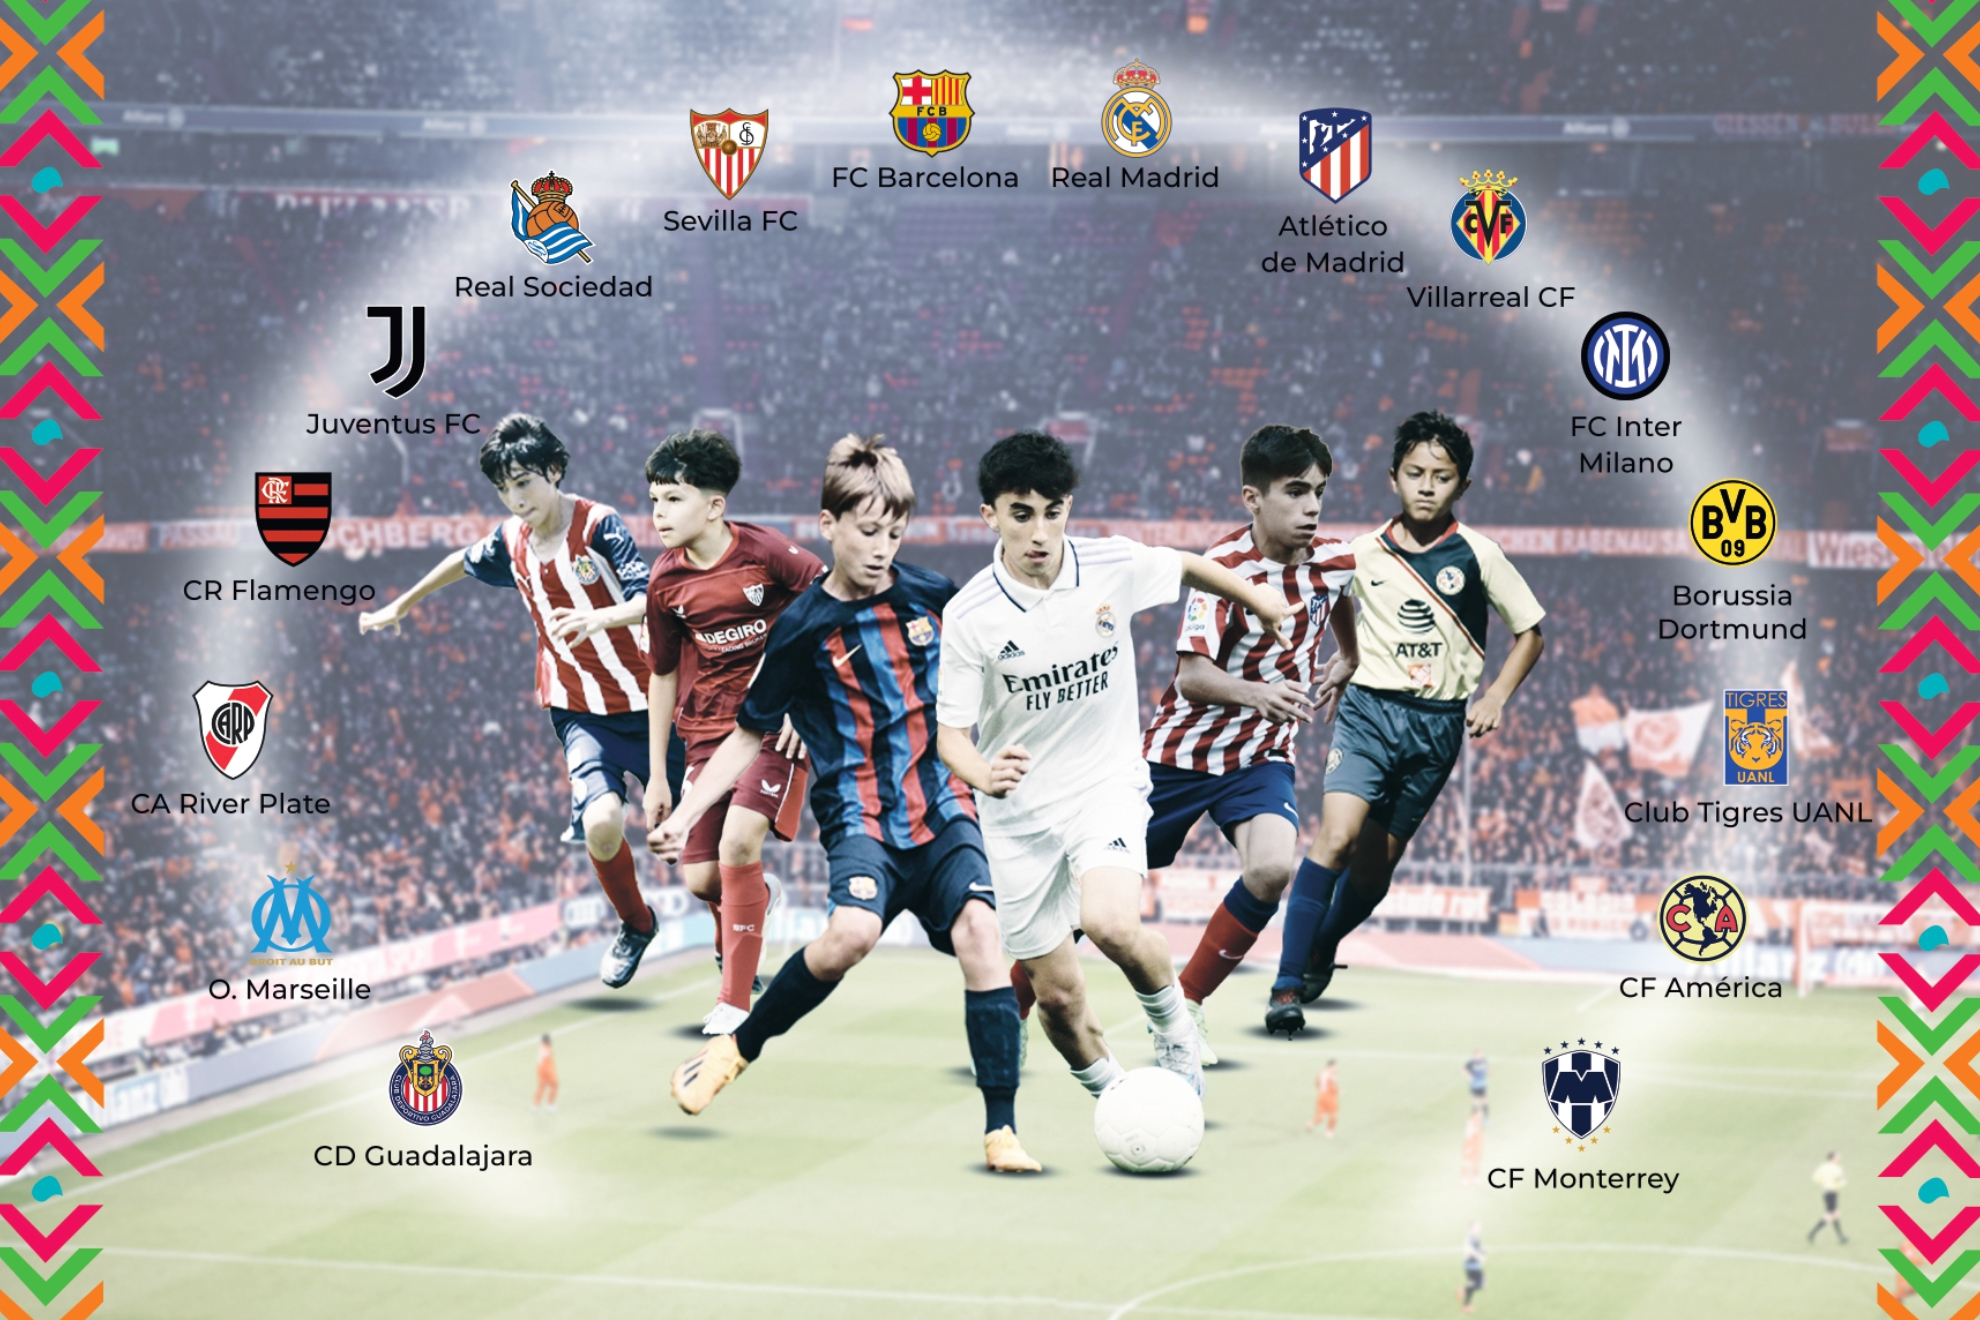 The Football Games | Tercer y cuarto puesto y Final: horarios y resultados